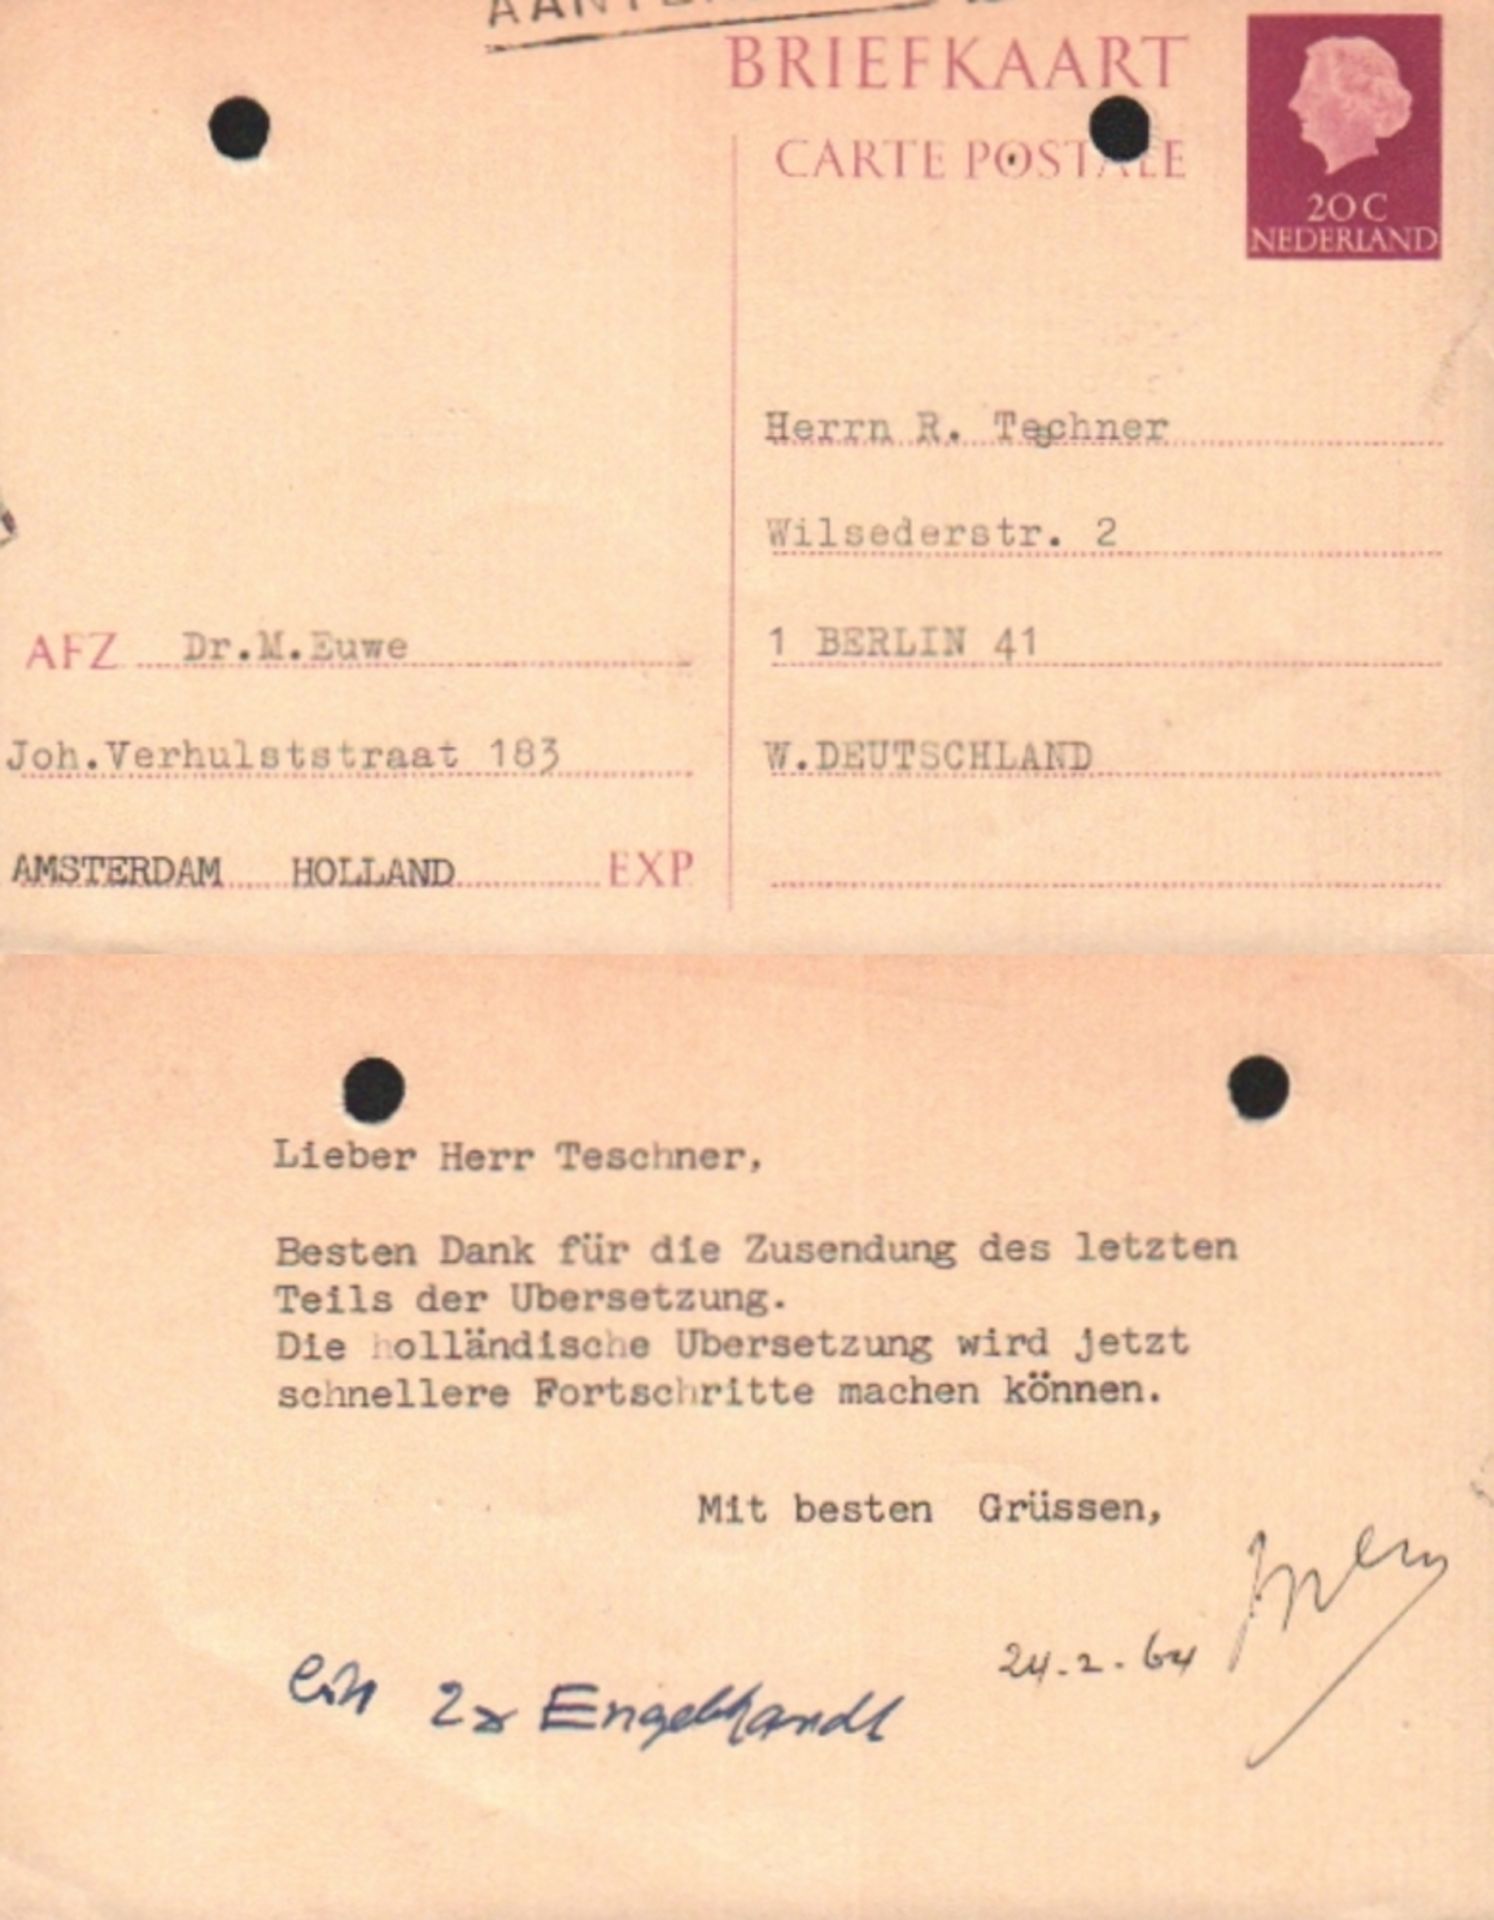 Euwe, Max. Postalisch gelaufene Postkarte an R. Teschner mit maschinegeschriebenem Text in deutscher